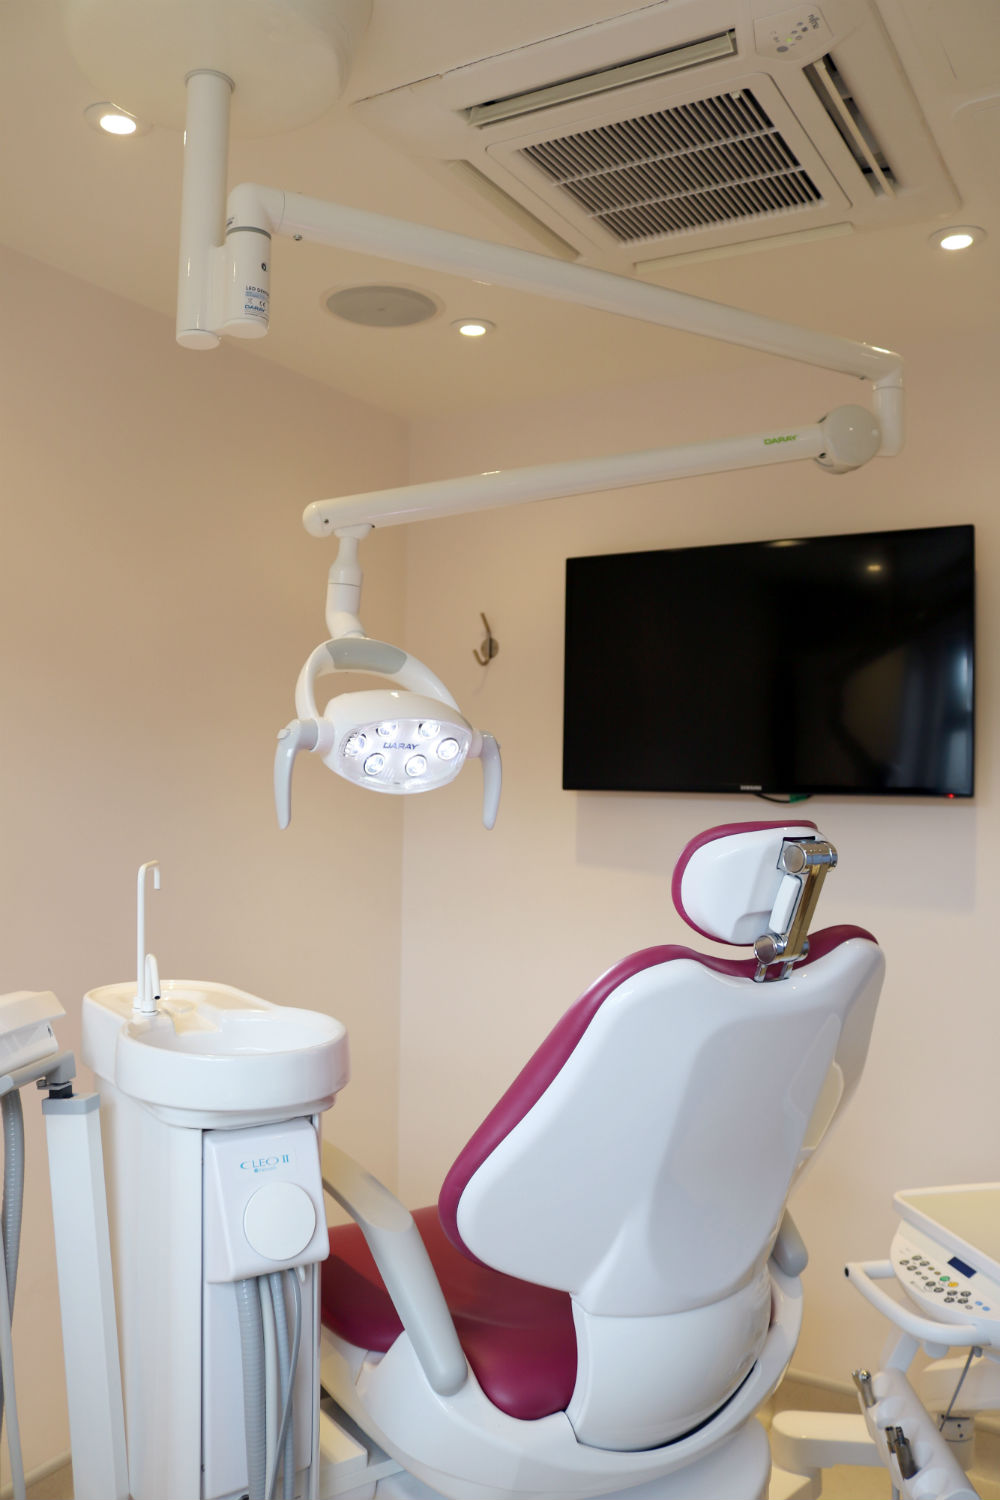 Ceiling Mounted Excel Dental Light in situ